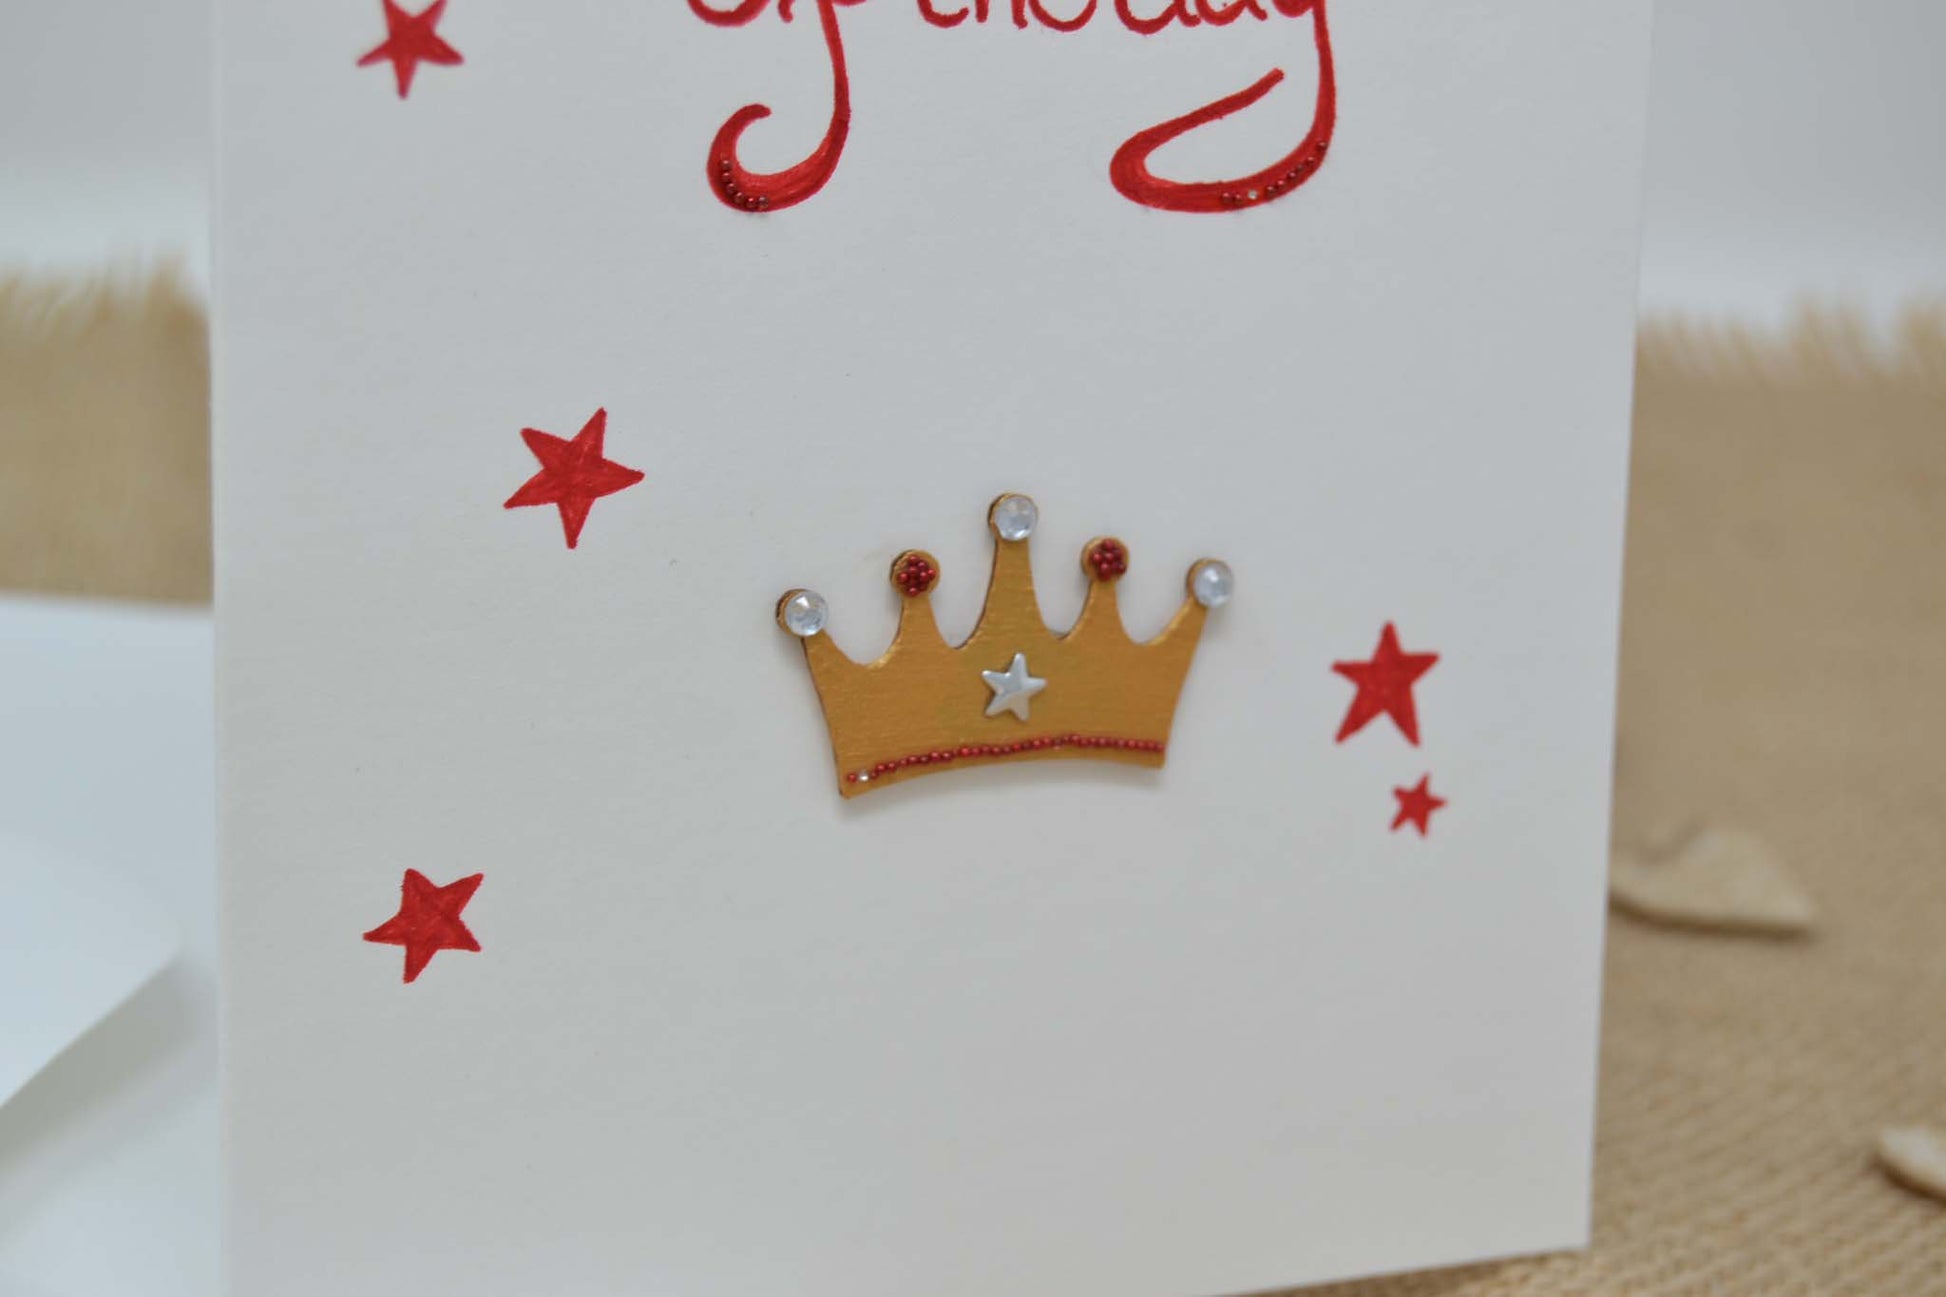 Geburtstagskarte "Queen of the day"